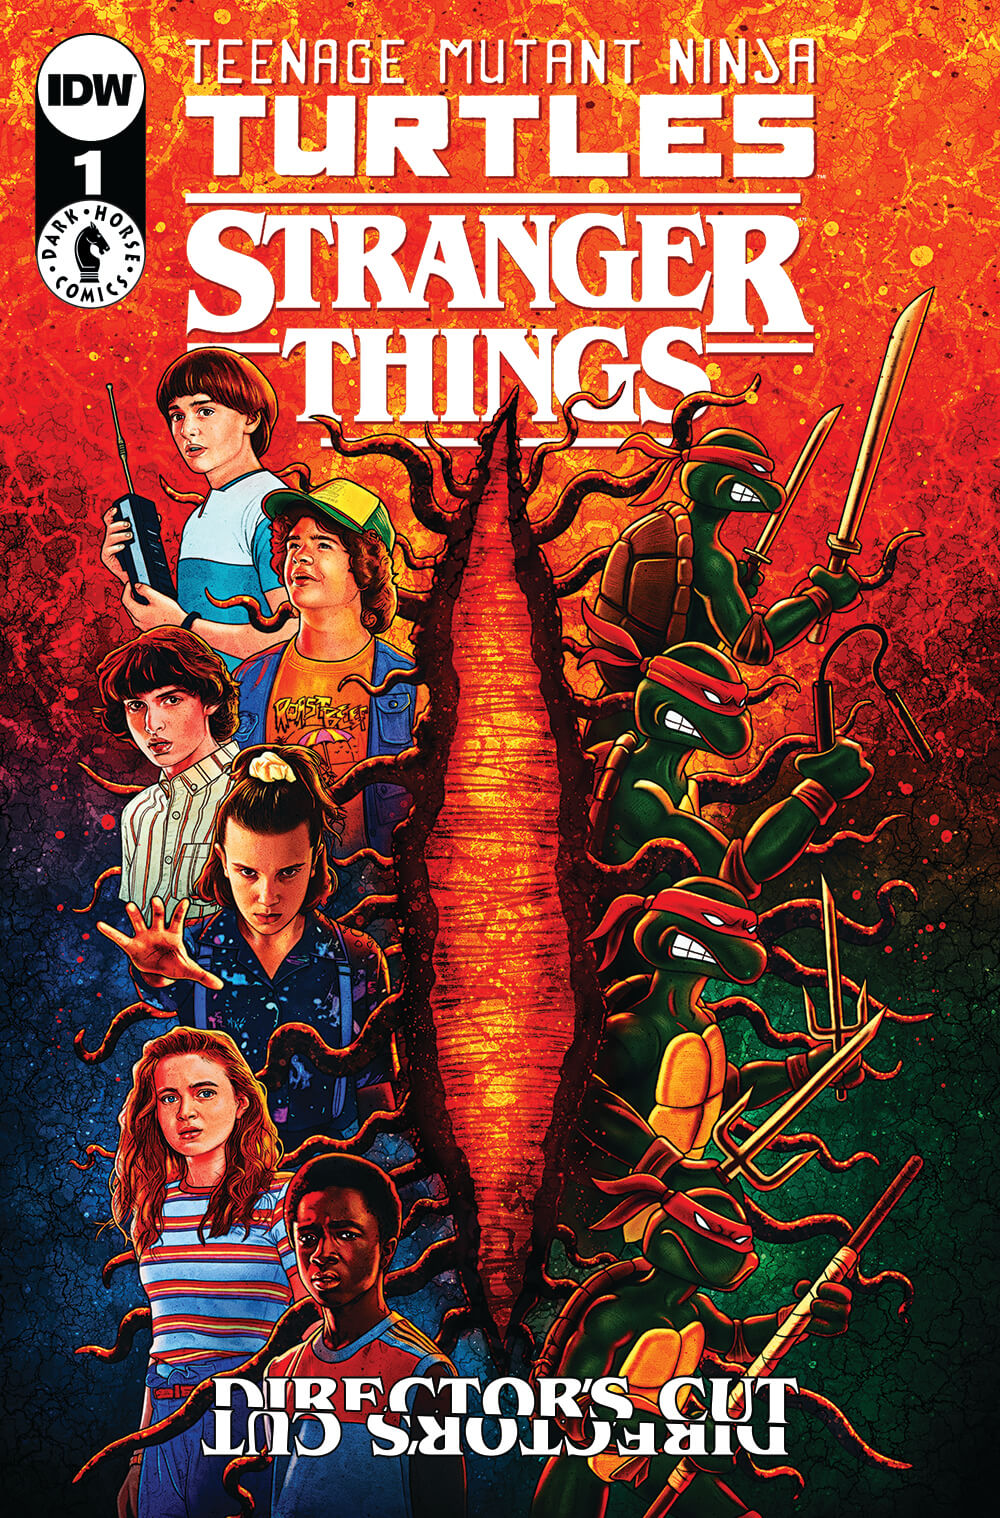 Teenage Mutant Ninja Turtles x Stranger Things #1 Director's Cut IDW Exclusive